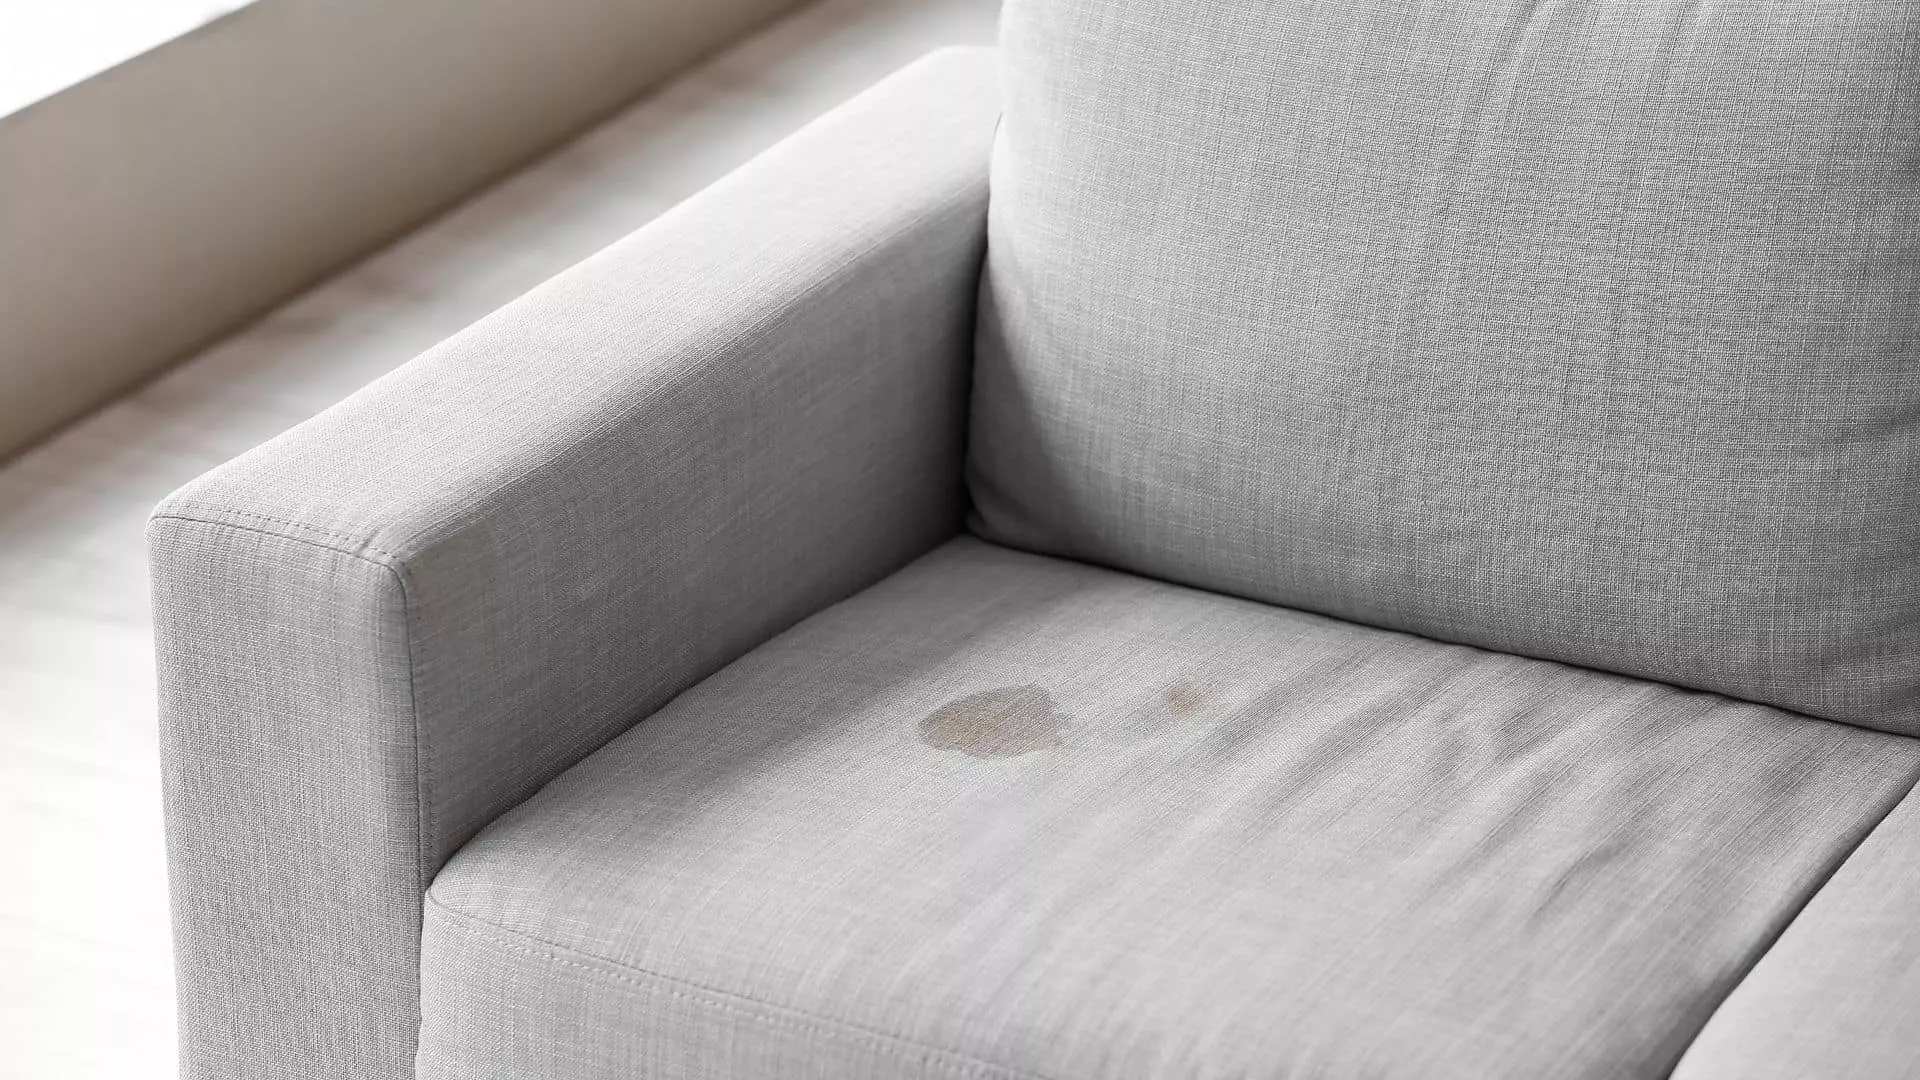 Revitalização Sofisticada: A Técnica de Limpeza que Transforma Seu Sofá